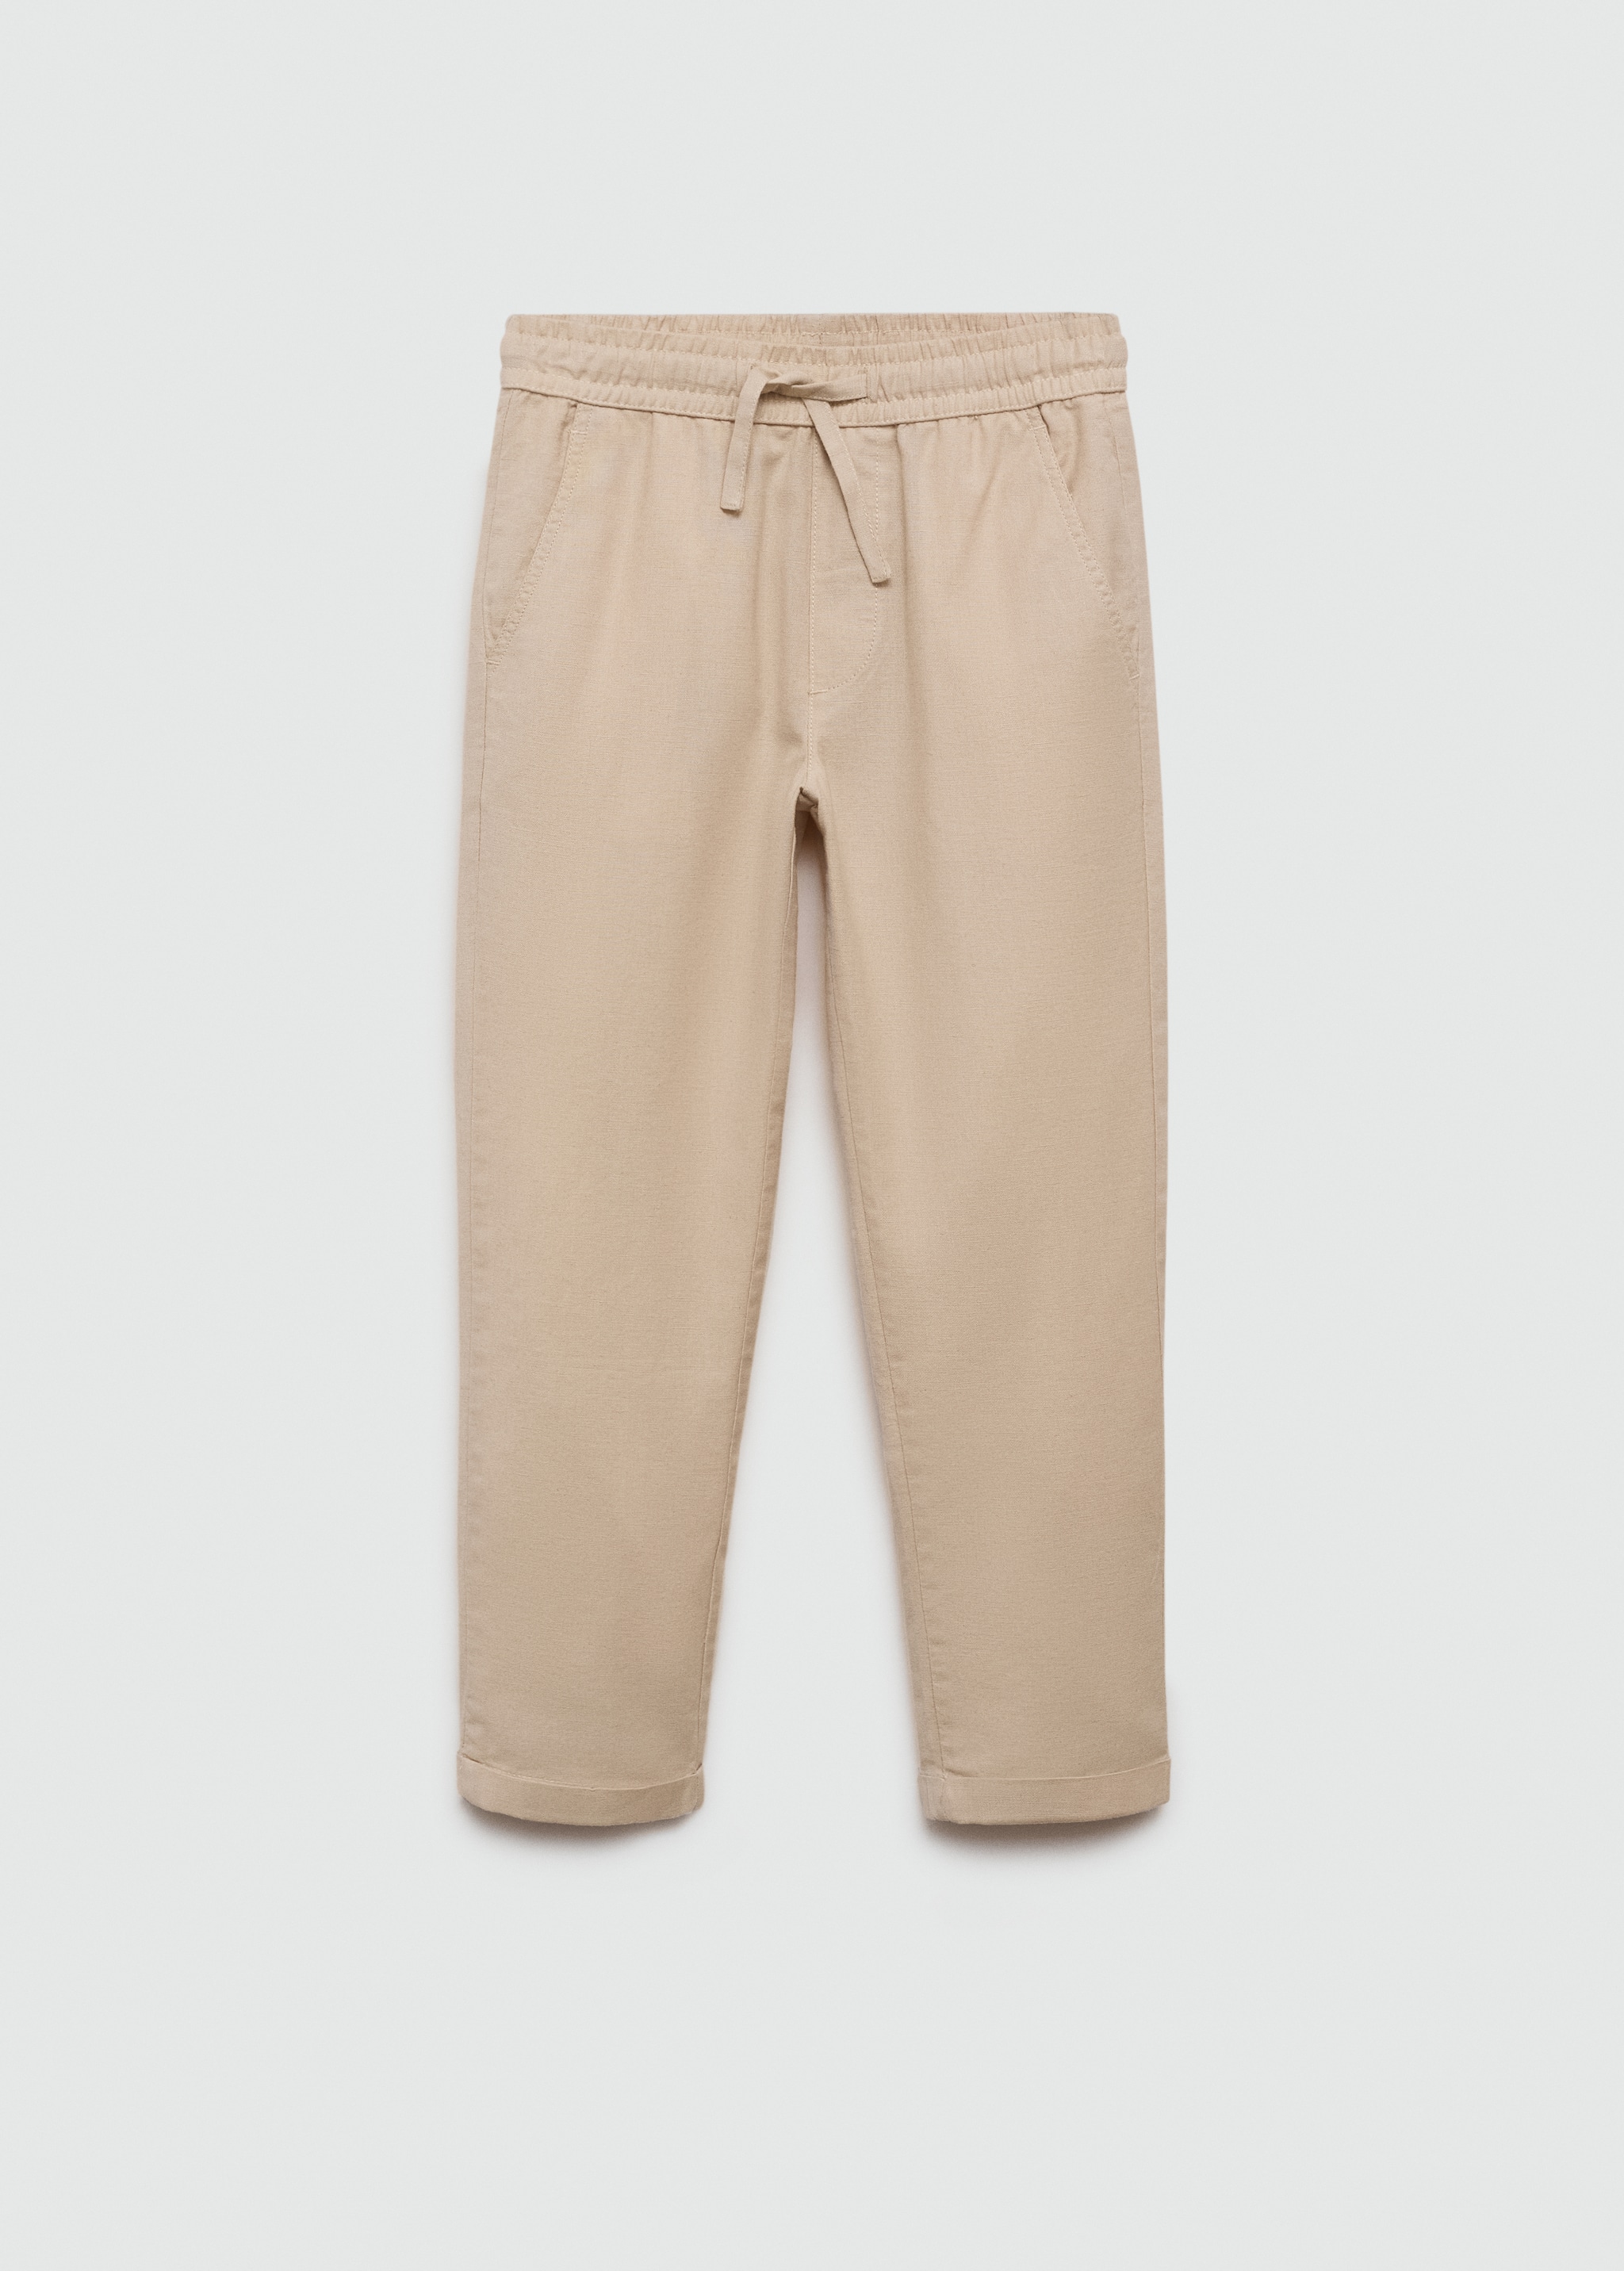 Льняные брюки с эластичным поясом - Изделие без модели